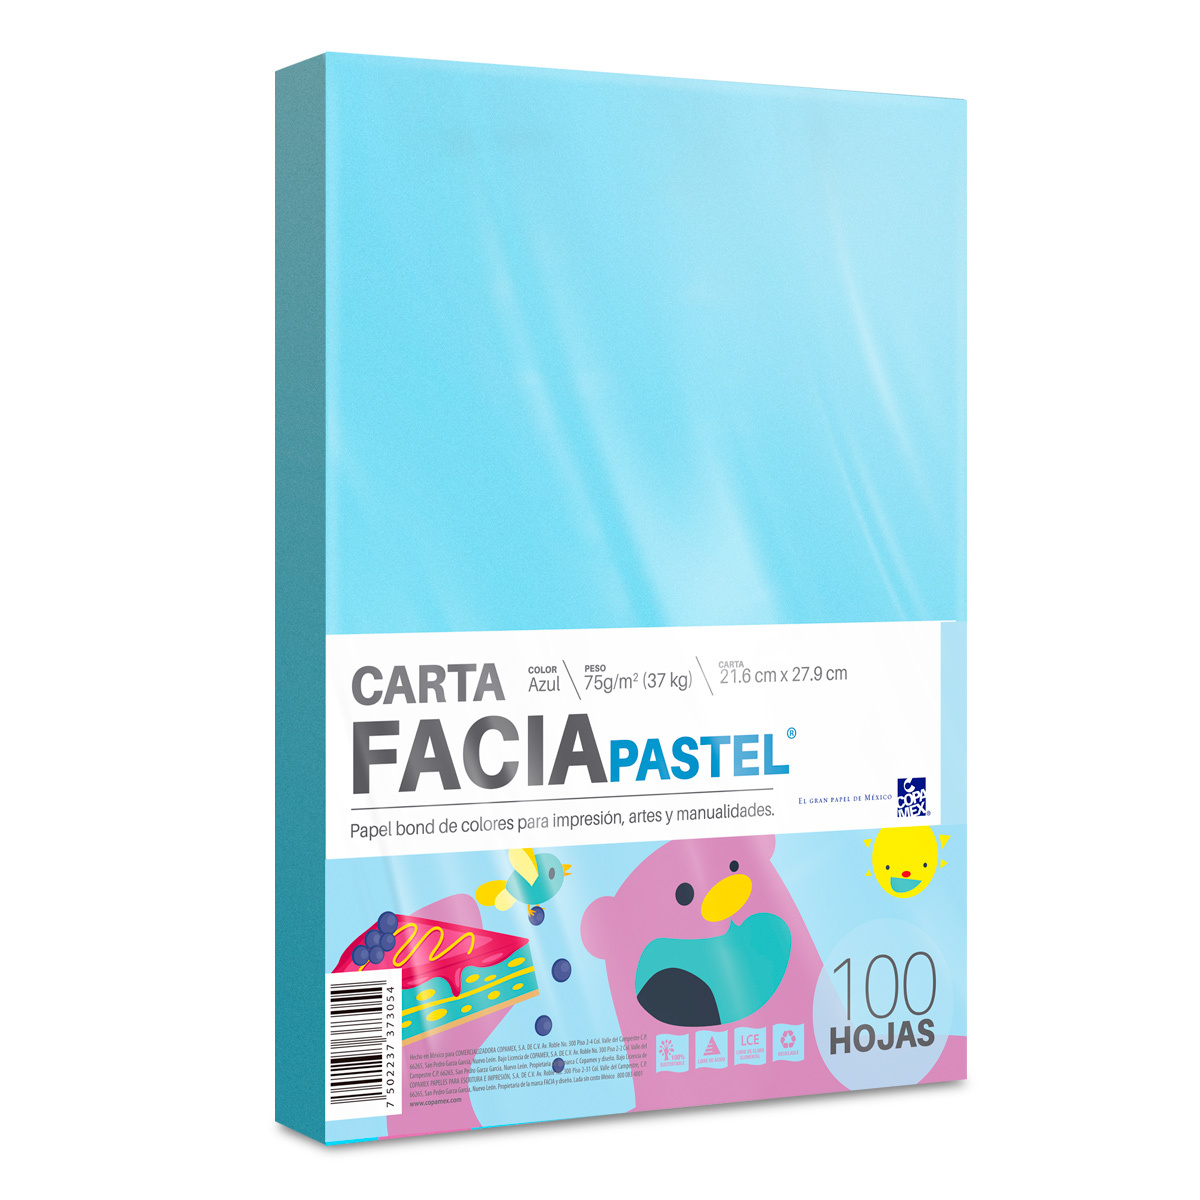 Hojas de Color Facia Pastel Paquete 100 hojas Carta Azul pastel 75 gr |  Office Depot Mexico